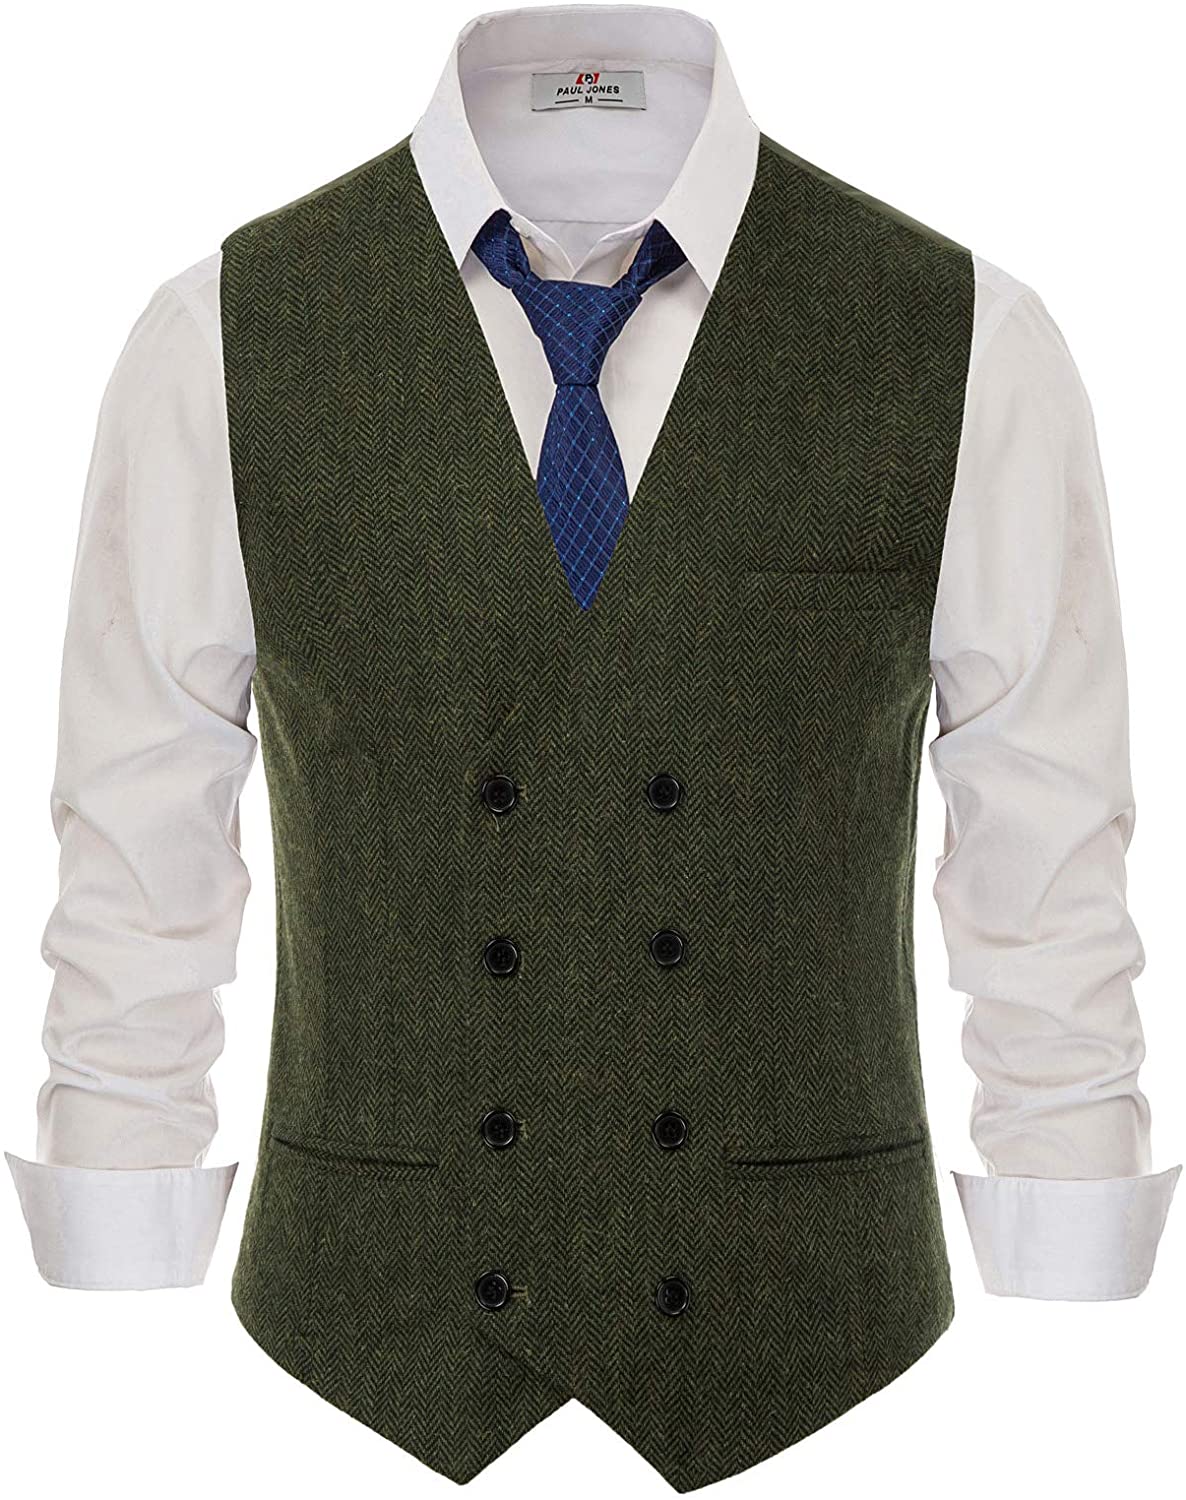 PJ PAUL JONES Men's Wool Blend Tweed Waistcoat Double Breasted Slim Fit ...